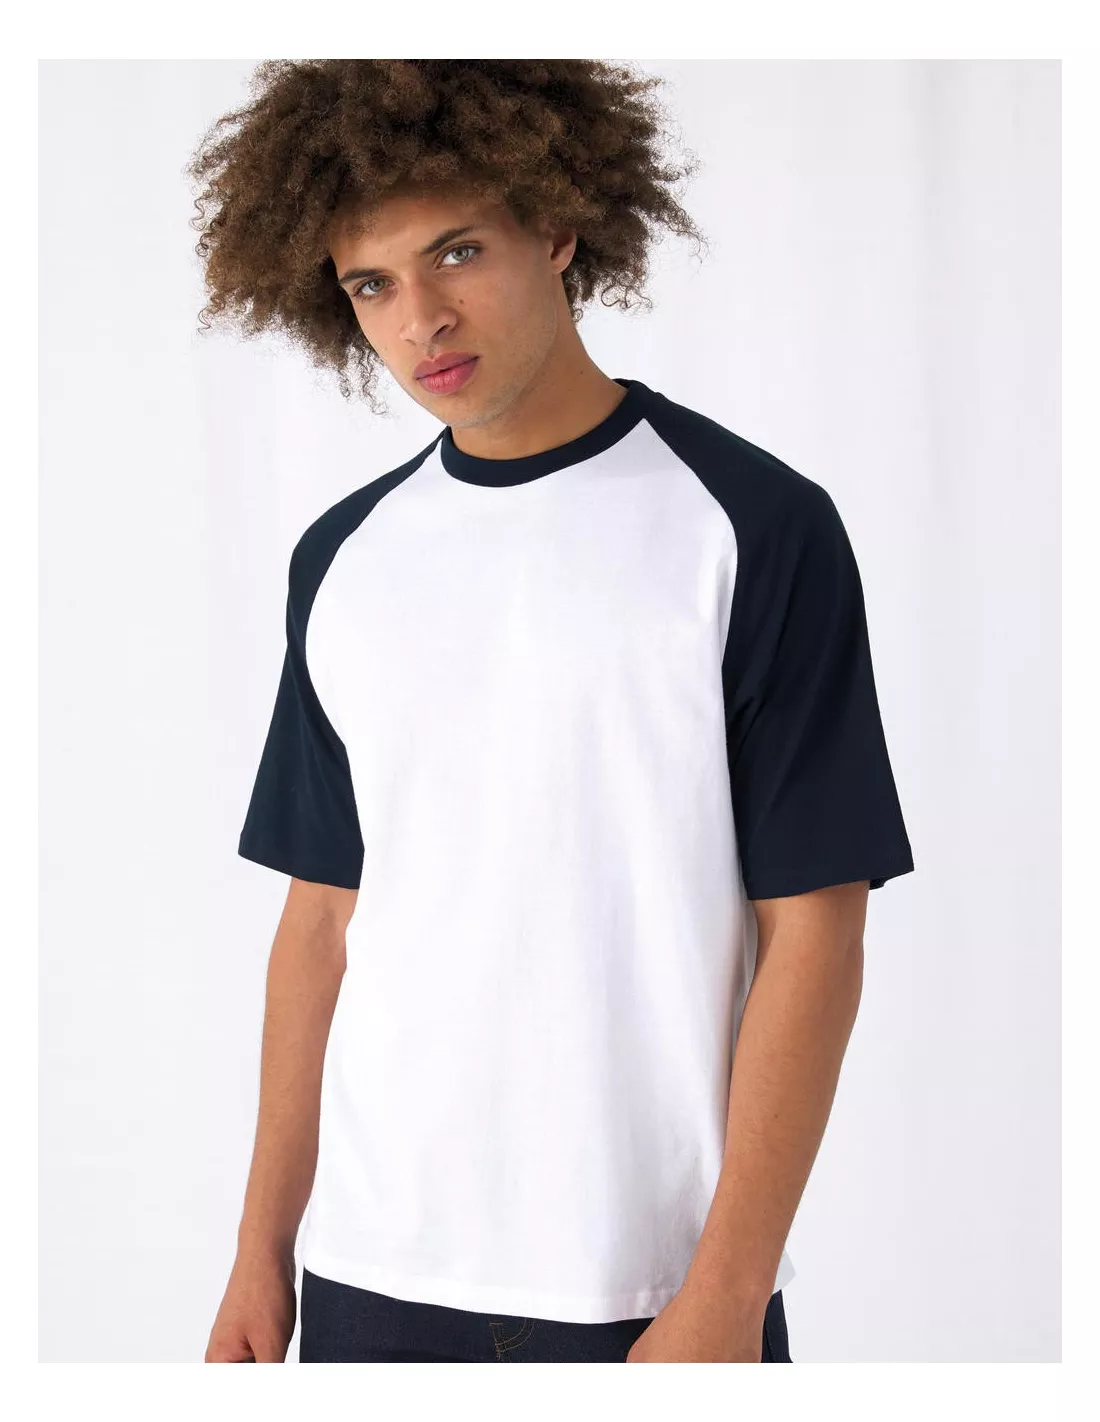 Camiseta de béisbol personalizable con tu nombre para hombre, camisa de  béisbol con estampado 3D, camisas